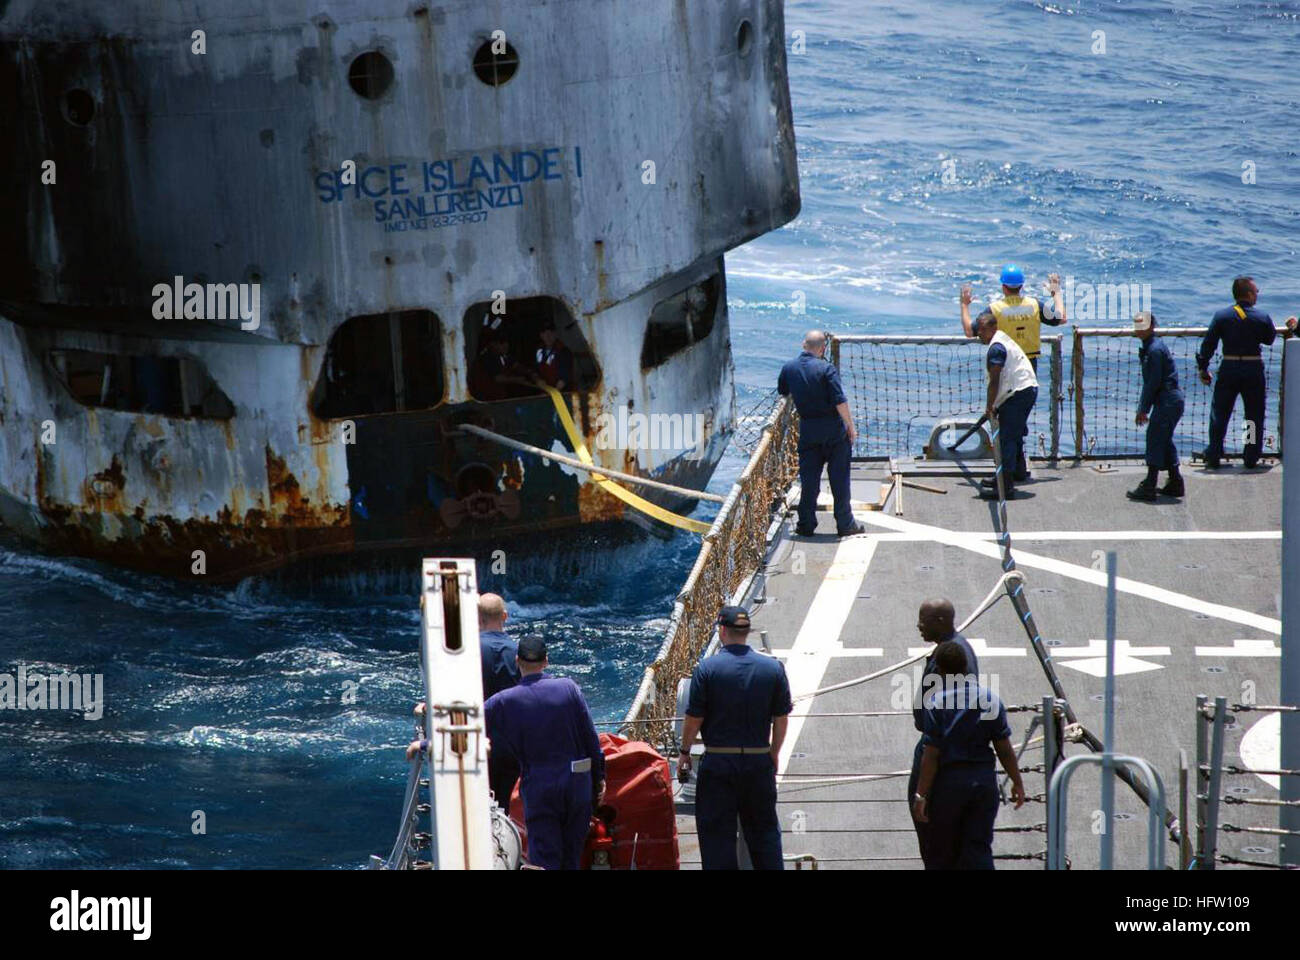 070926-N-0000X-002 OCÉANO ÍNDICO (Sept. 26, 2007) --misil guiado el destructor USS Stout (DDG 55) se remolca la bandera de Tanzania Spice Island ferry de pasajeros mientras que en aguas internacionales frente a las costas de Somalia. La Isla de las especias, que viajaba sin pasajeros, aclamado por asistencia de ingeniería cuando se quedó sin combustible mientras transitan a Tanzania. Stout proporcionó a la tripulación con alimentos, agua y combustible y ayudó a obtener el buque operativo bajo su propio poder. Las fuerzas de la coalición tienen una larga tradición de ayudar a los navegantes en peligro por la prestación de asistencia médica, asistencia técnica y la búsqueda de un Foto de stock